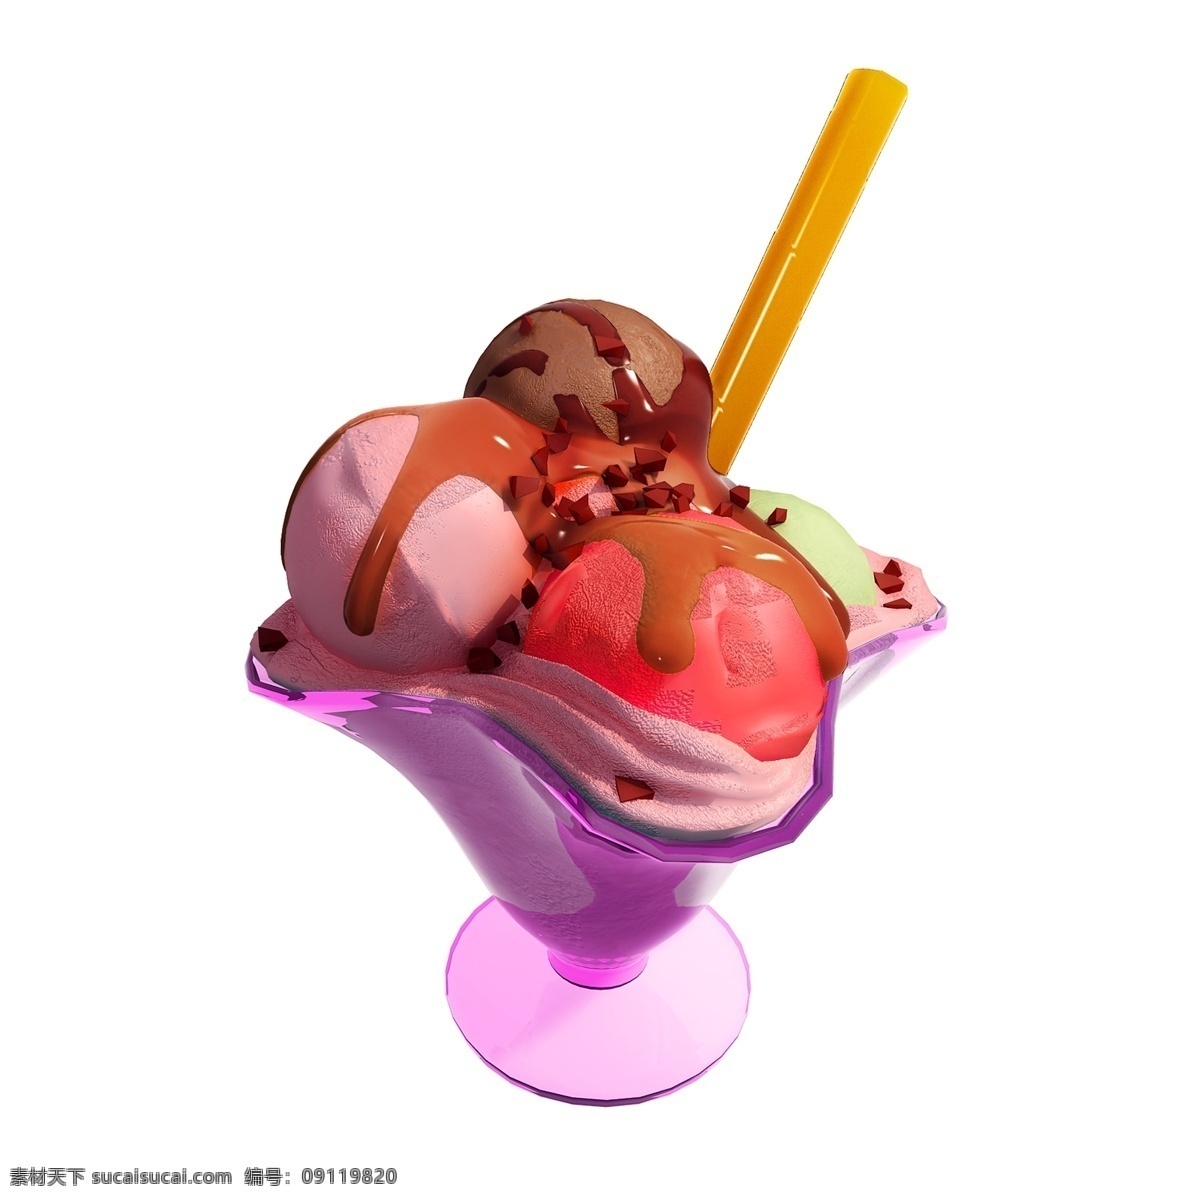 清凉 甜品 图 夏季 夏天 冷饮 冰淇淋 雪糕 质感 冰凉 凉爽 立体 仿真 创意 套图 png图